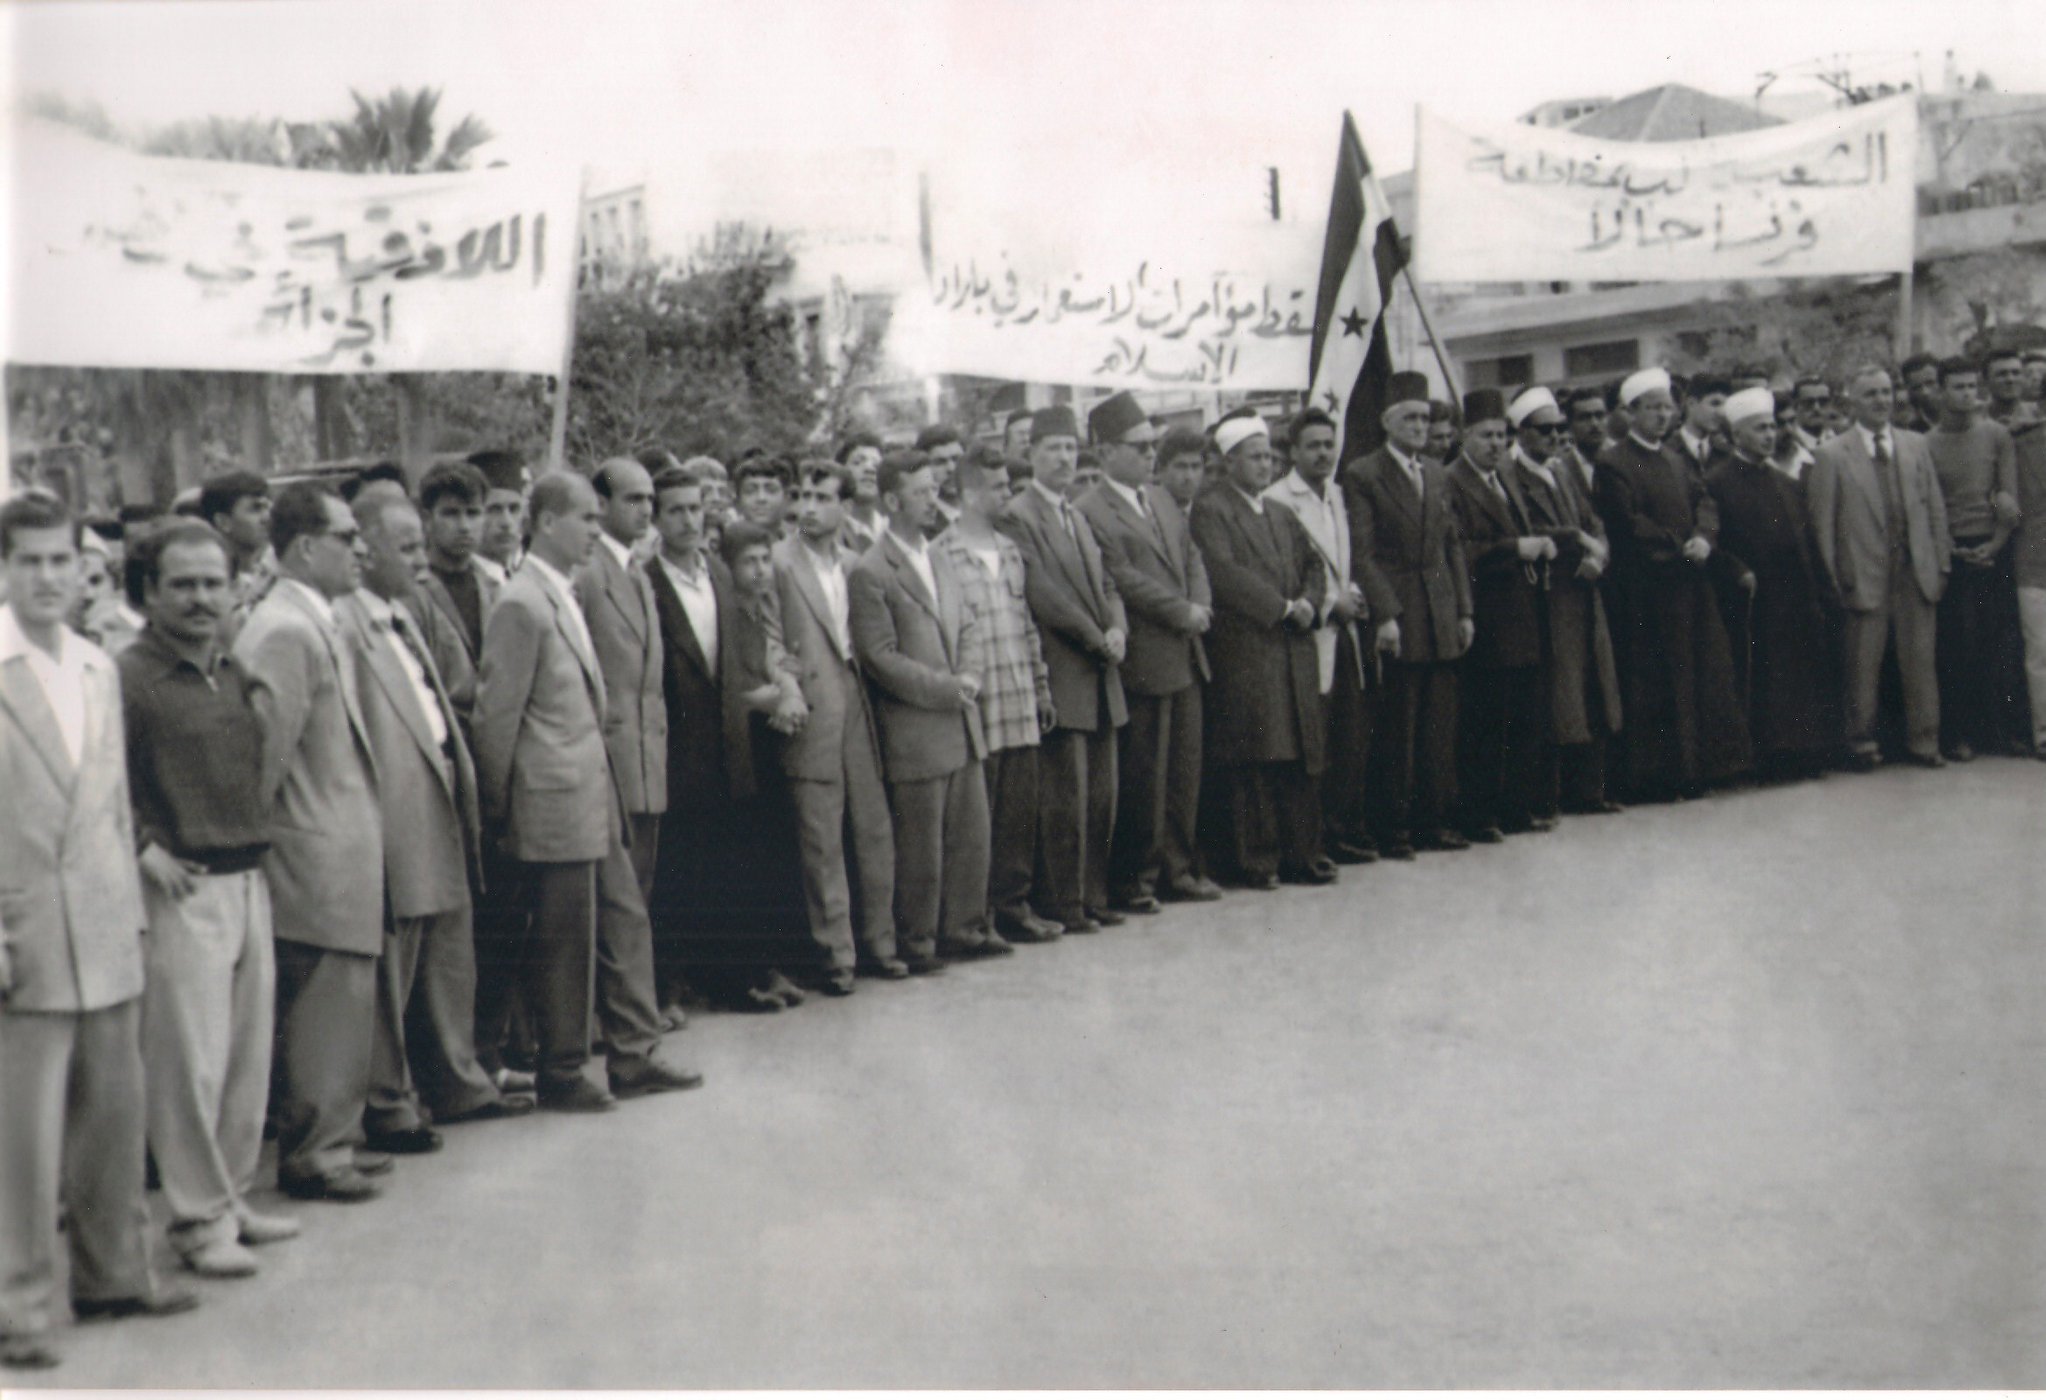 التاريخ السوري المعاصر - مسيرةٌ في اللاذقـيَّة تضامناً مع نضال الشعب الجزائريّ 1956م